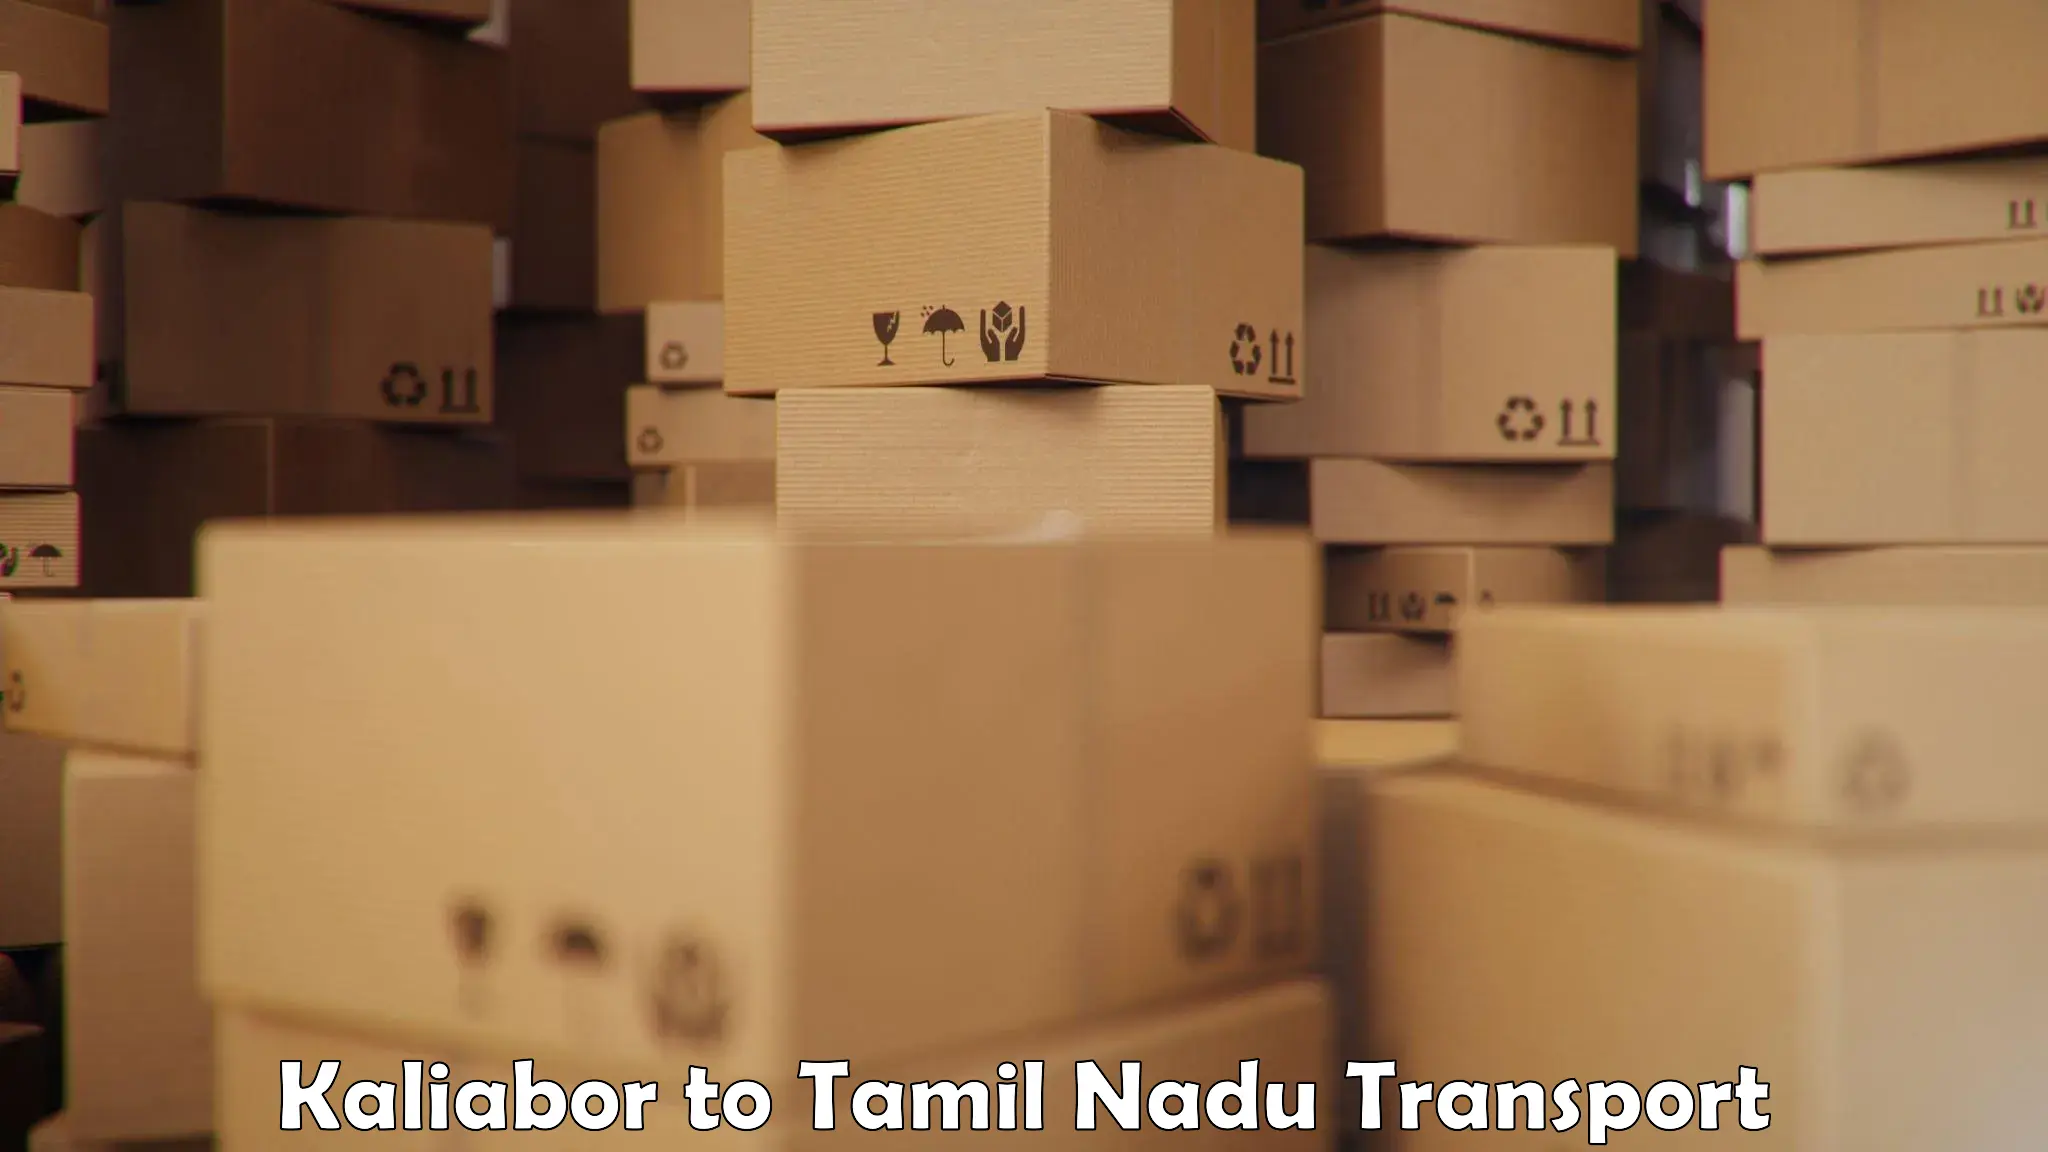 Daily parcel service transport Kaliabor to Thiruvadanai